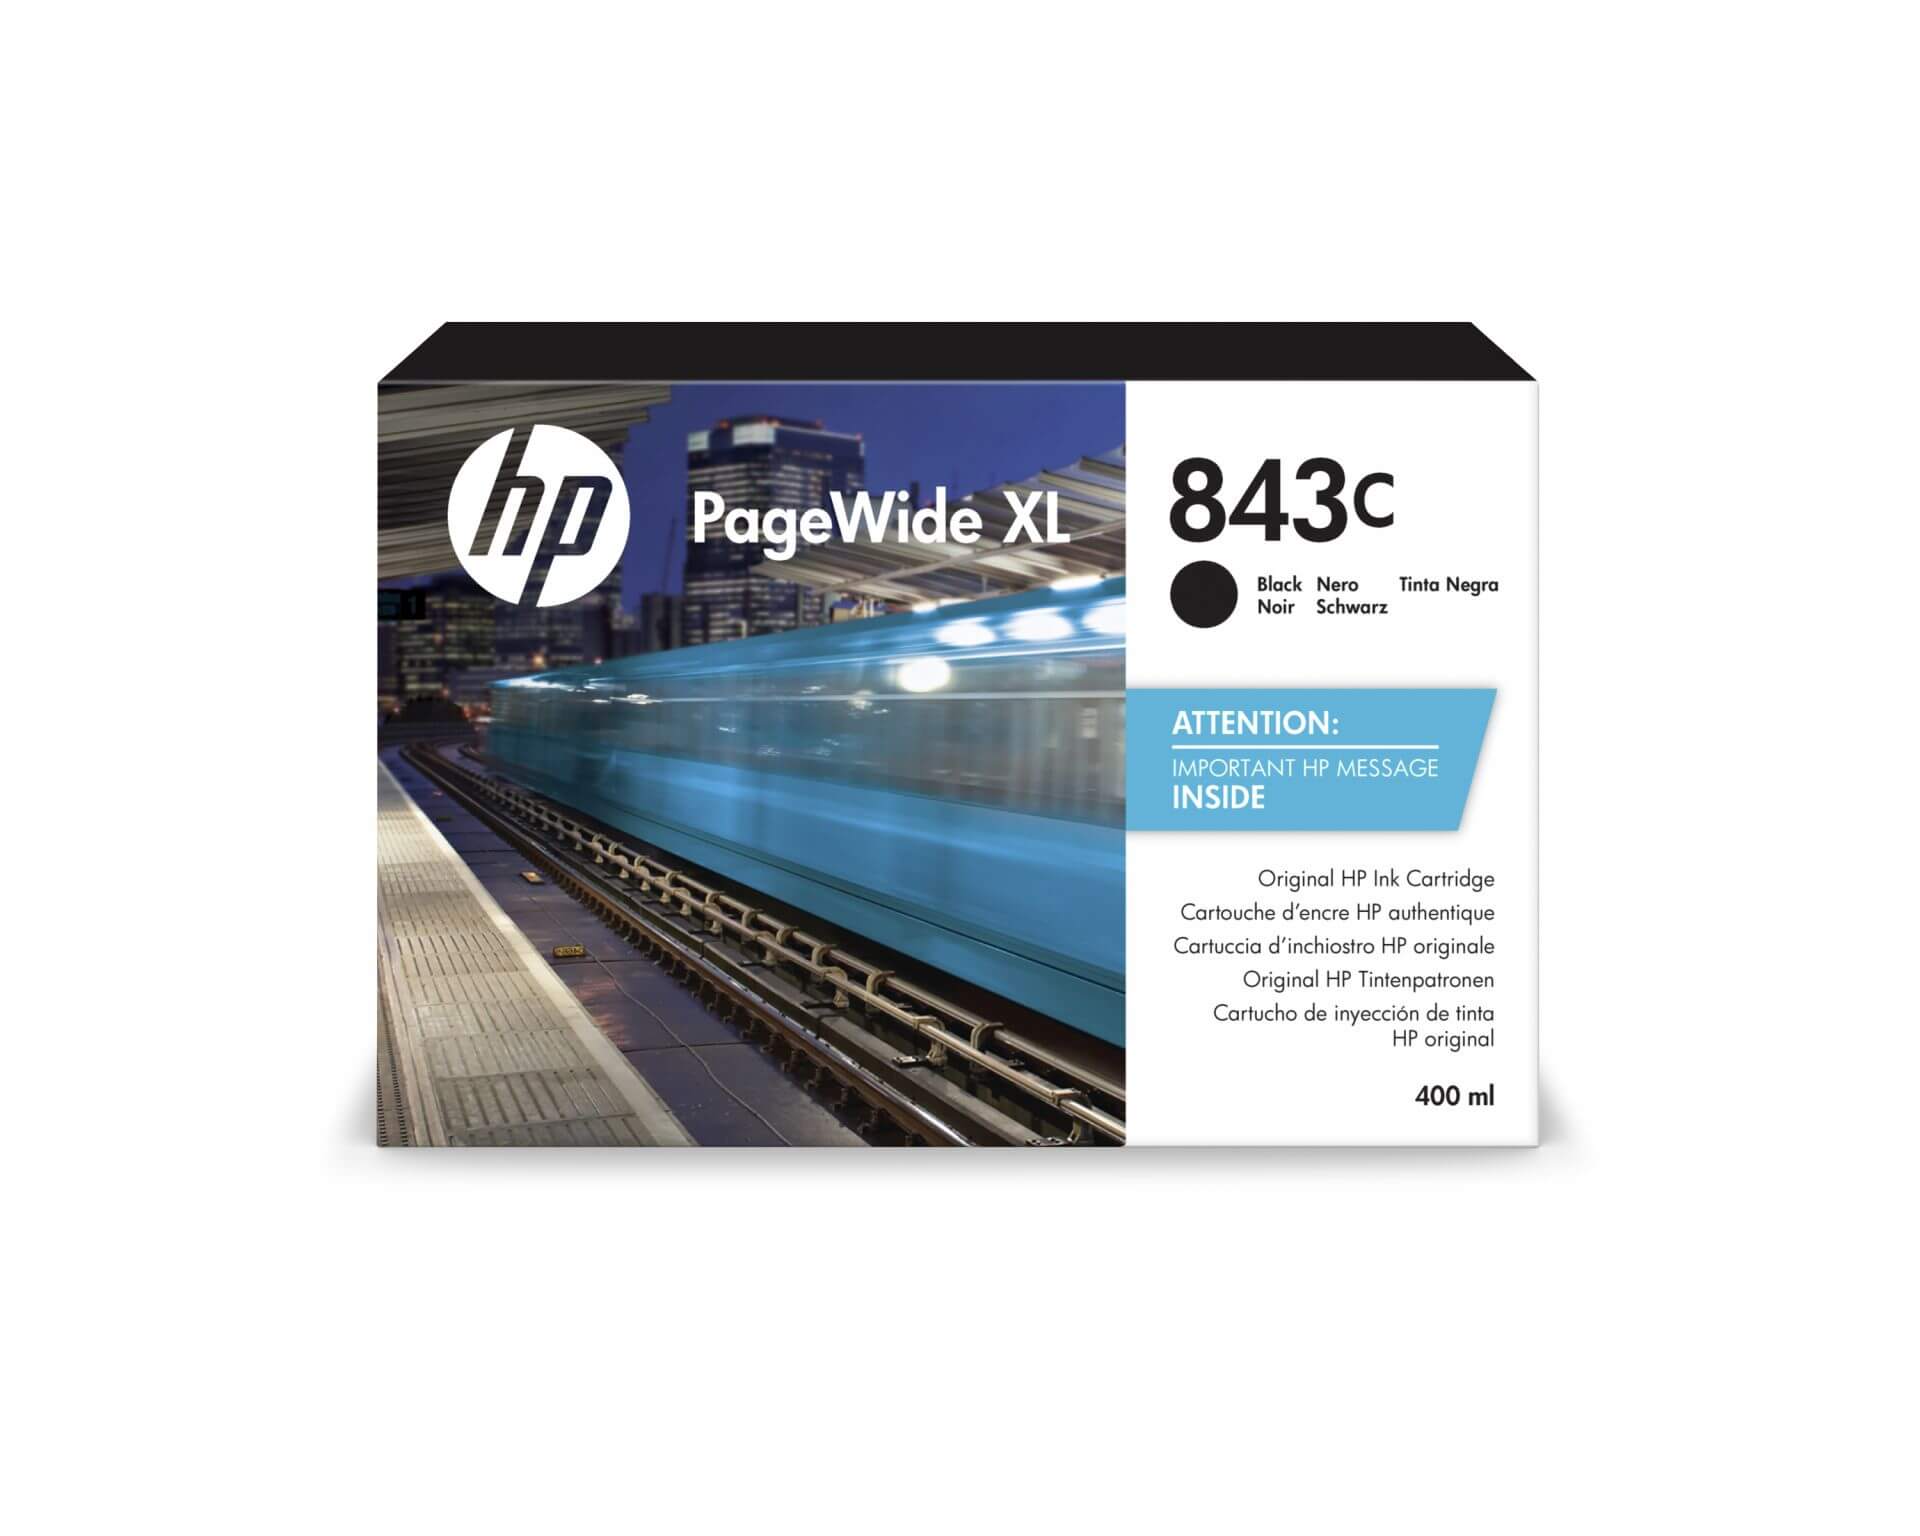 HP 843C PageWide Tinte schwarz - 400 ml